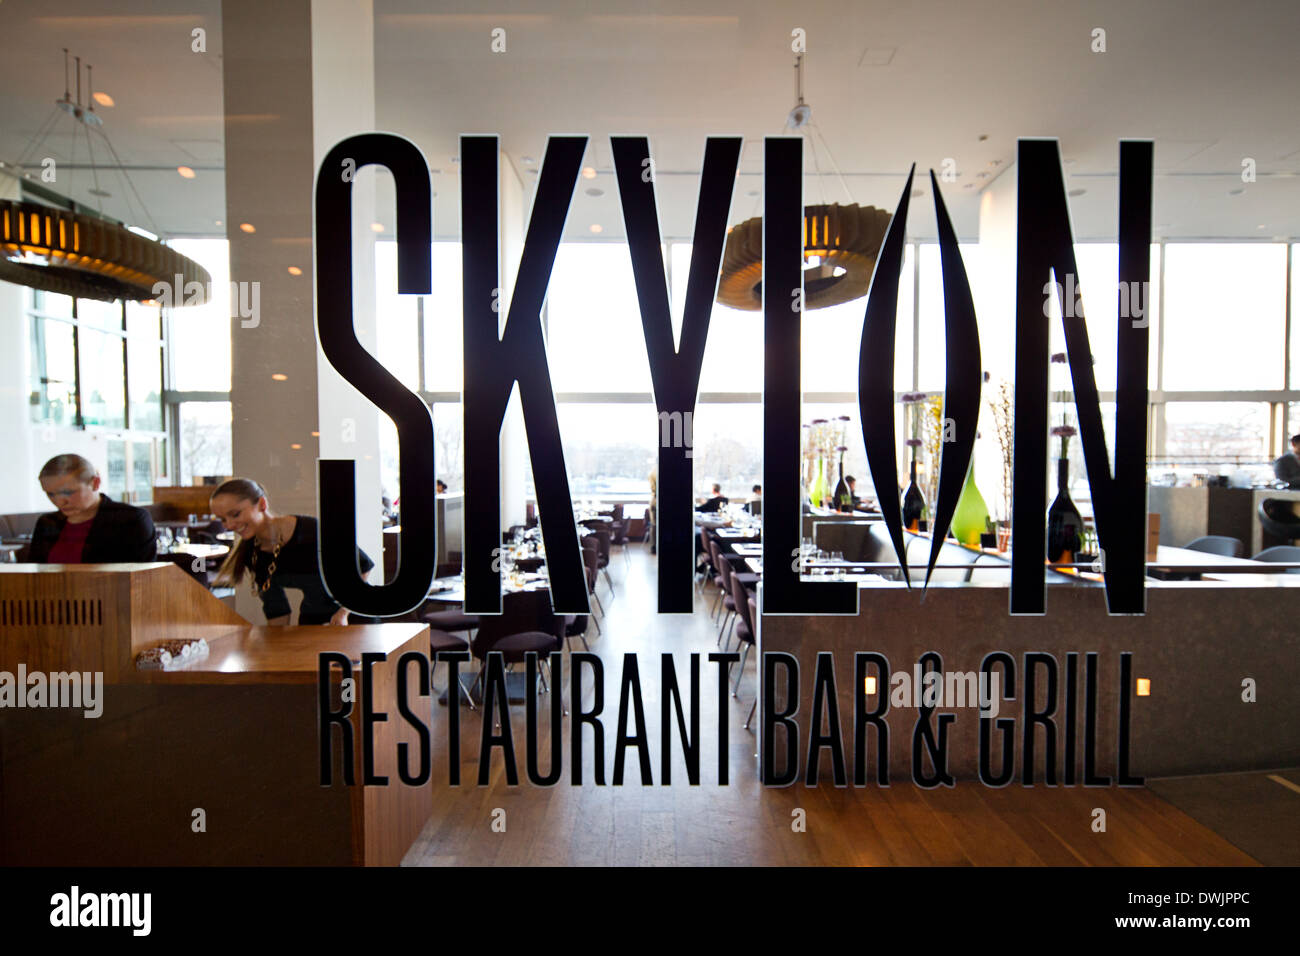 Der Skylon-Restaurant auf der Dachterrasse, Bar & Grill, in der Royal Festival Hall. Southbank, komplex, London. Stockfoto